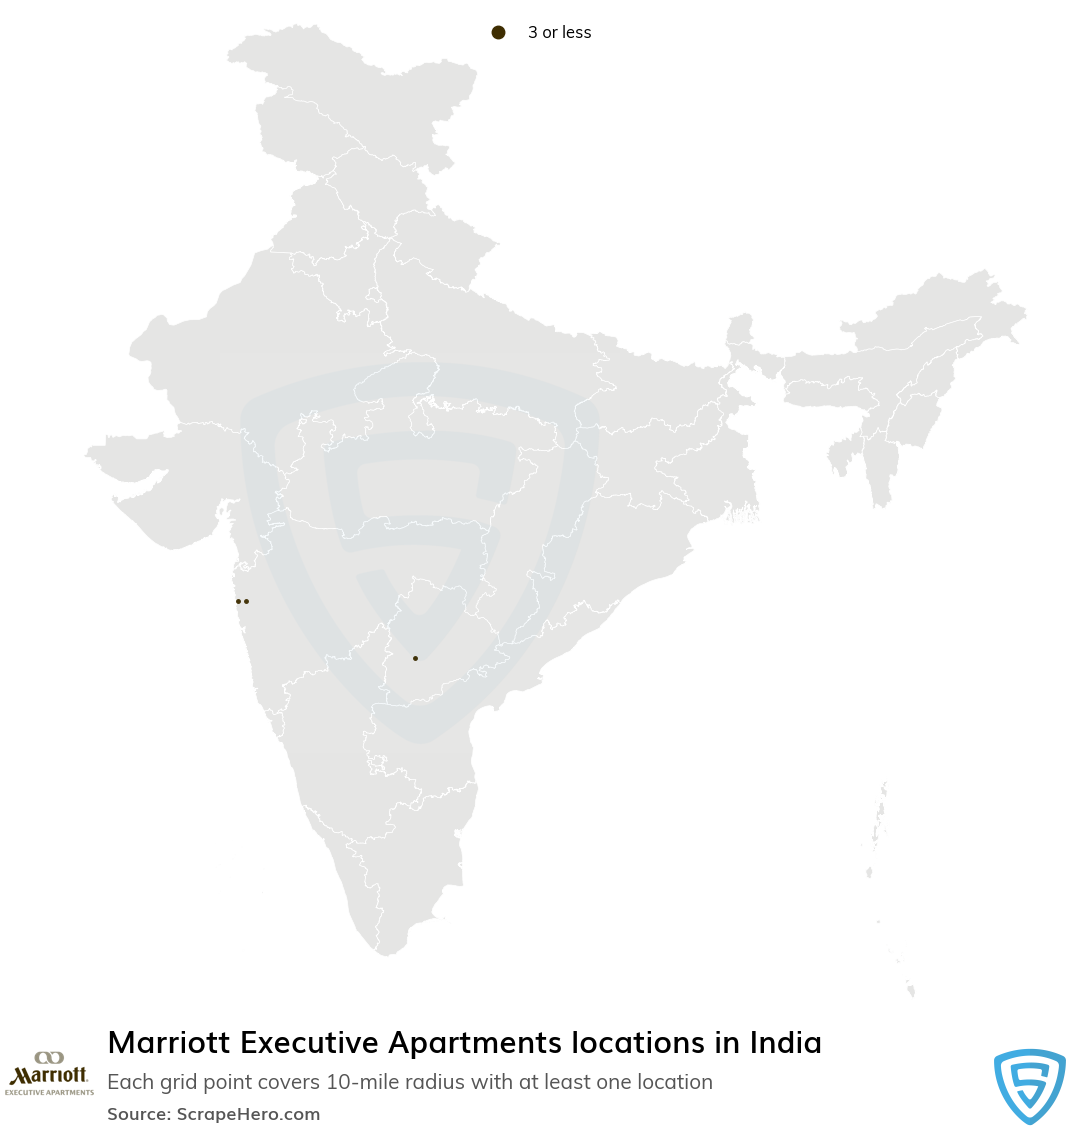 Marriott Executive Apartments hotel locations